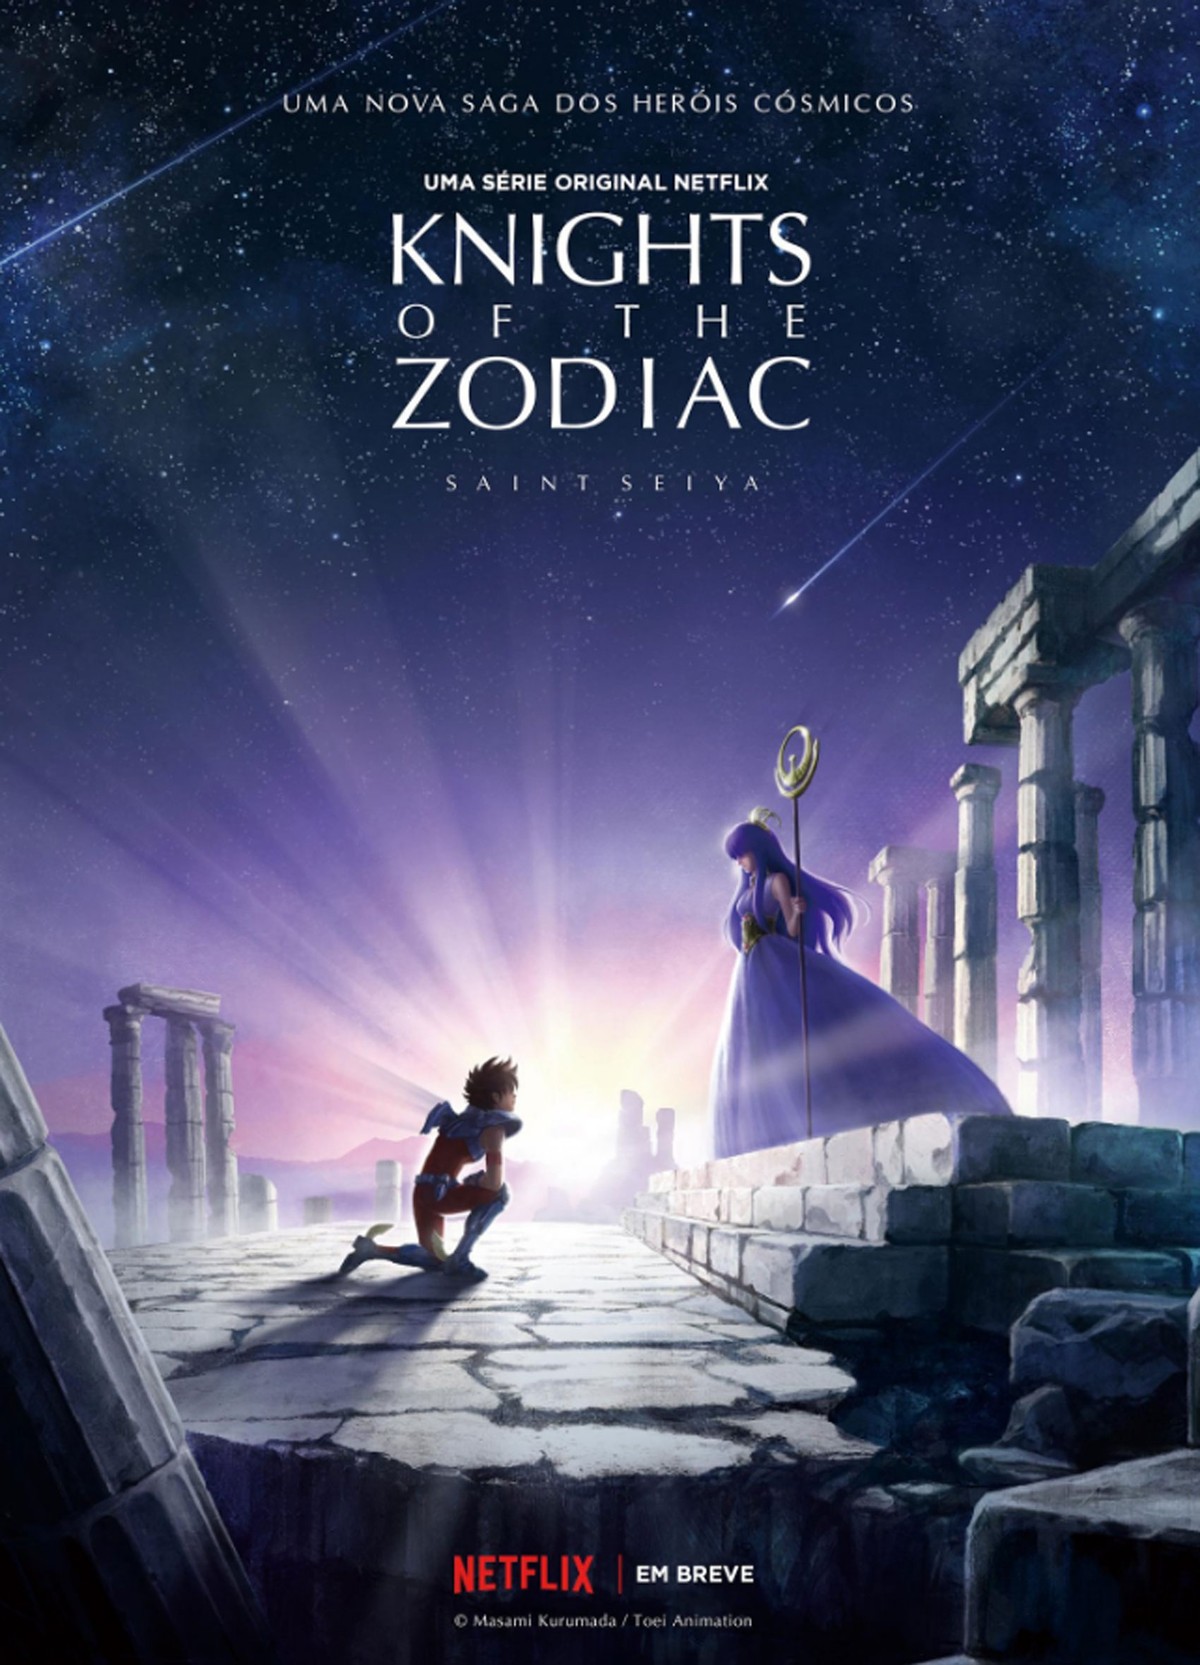 Cavaleiros do Zodíaco da Netflix tem visual incrível